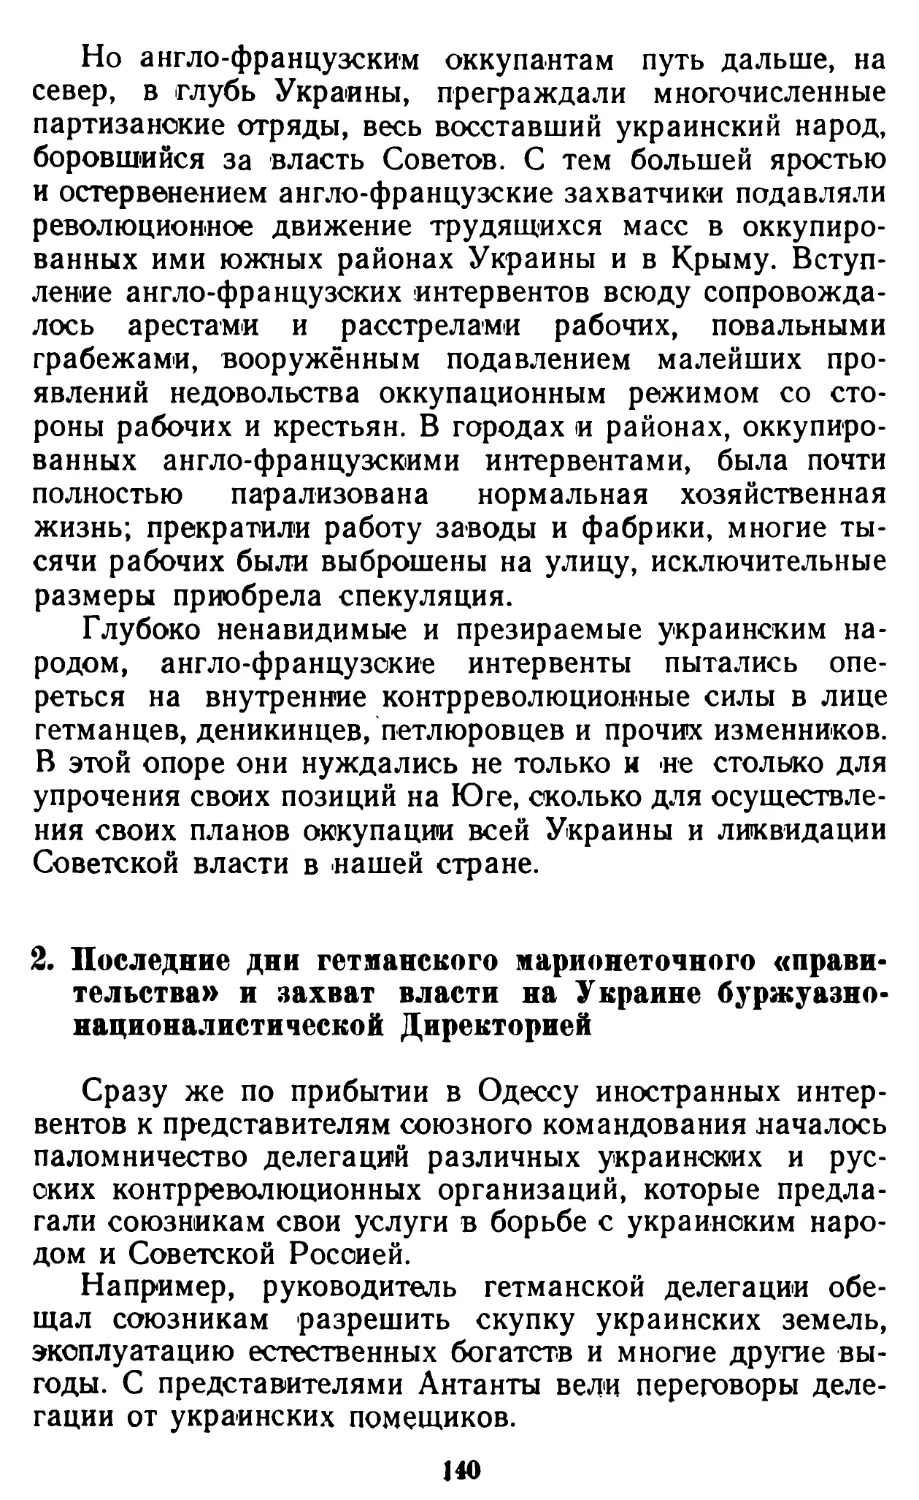 2. Последние дни гетманского марионеточного «правитель-ства» и захват власти на Украине буржуазно-националистической Директорией